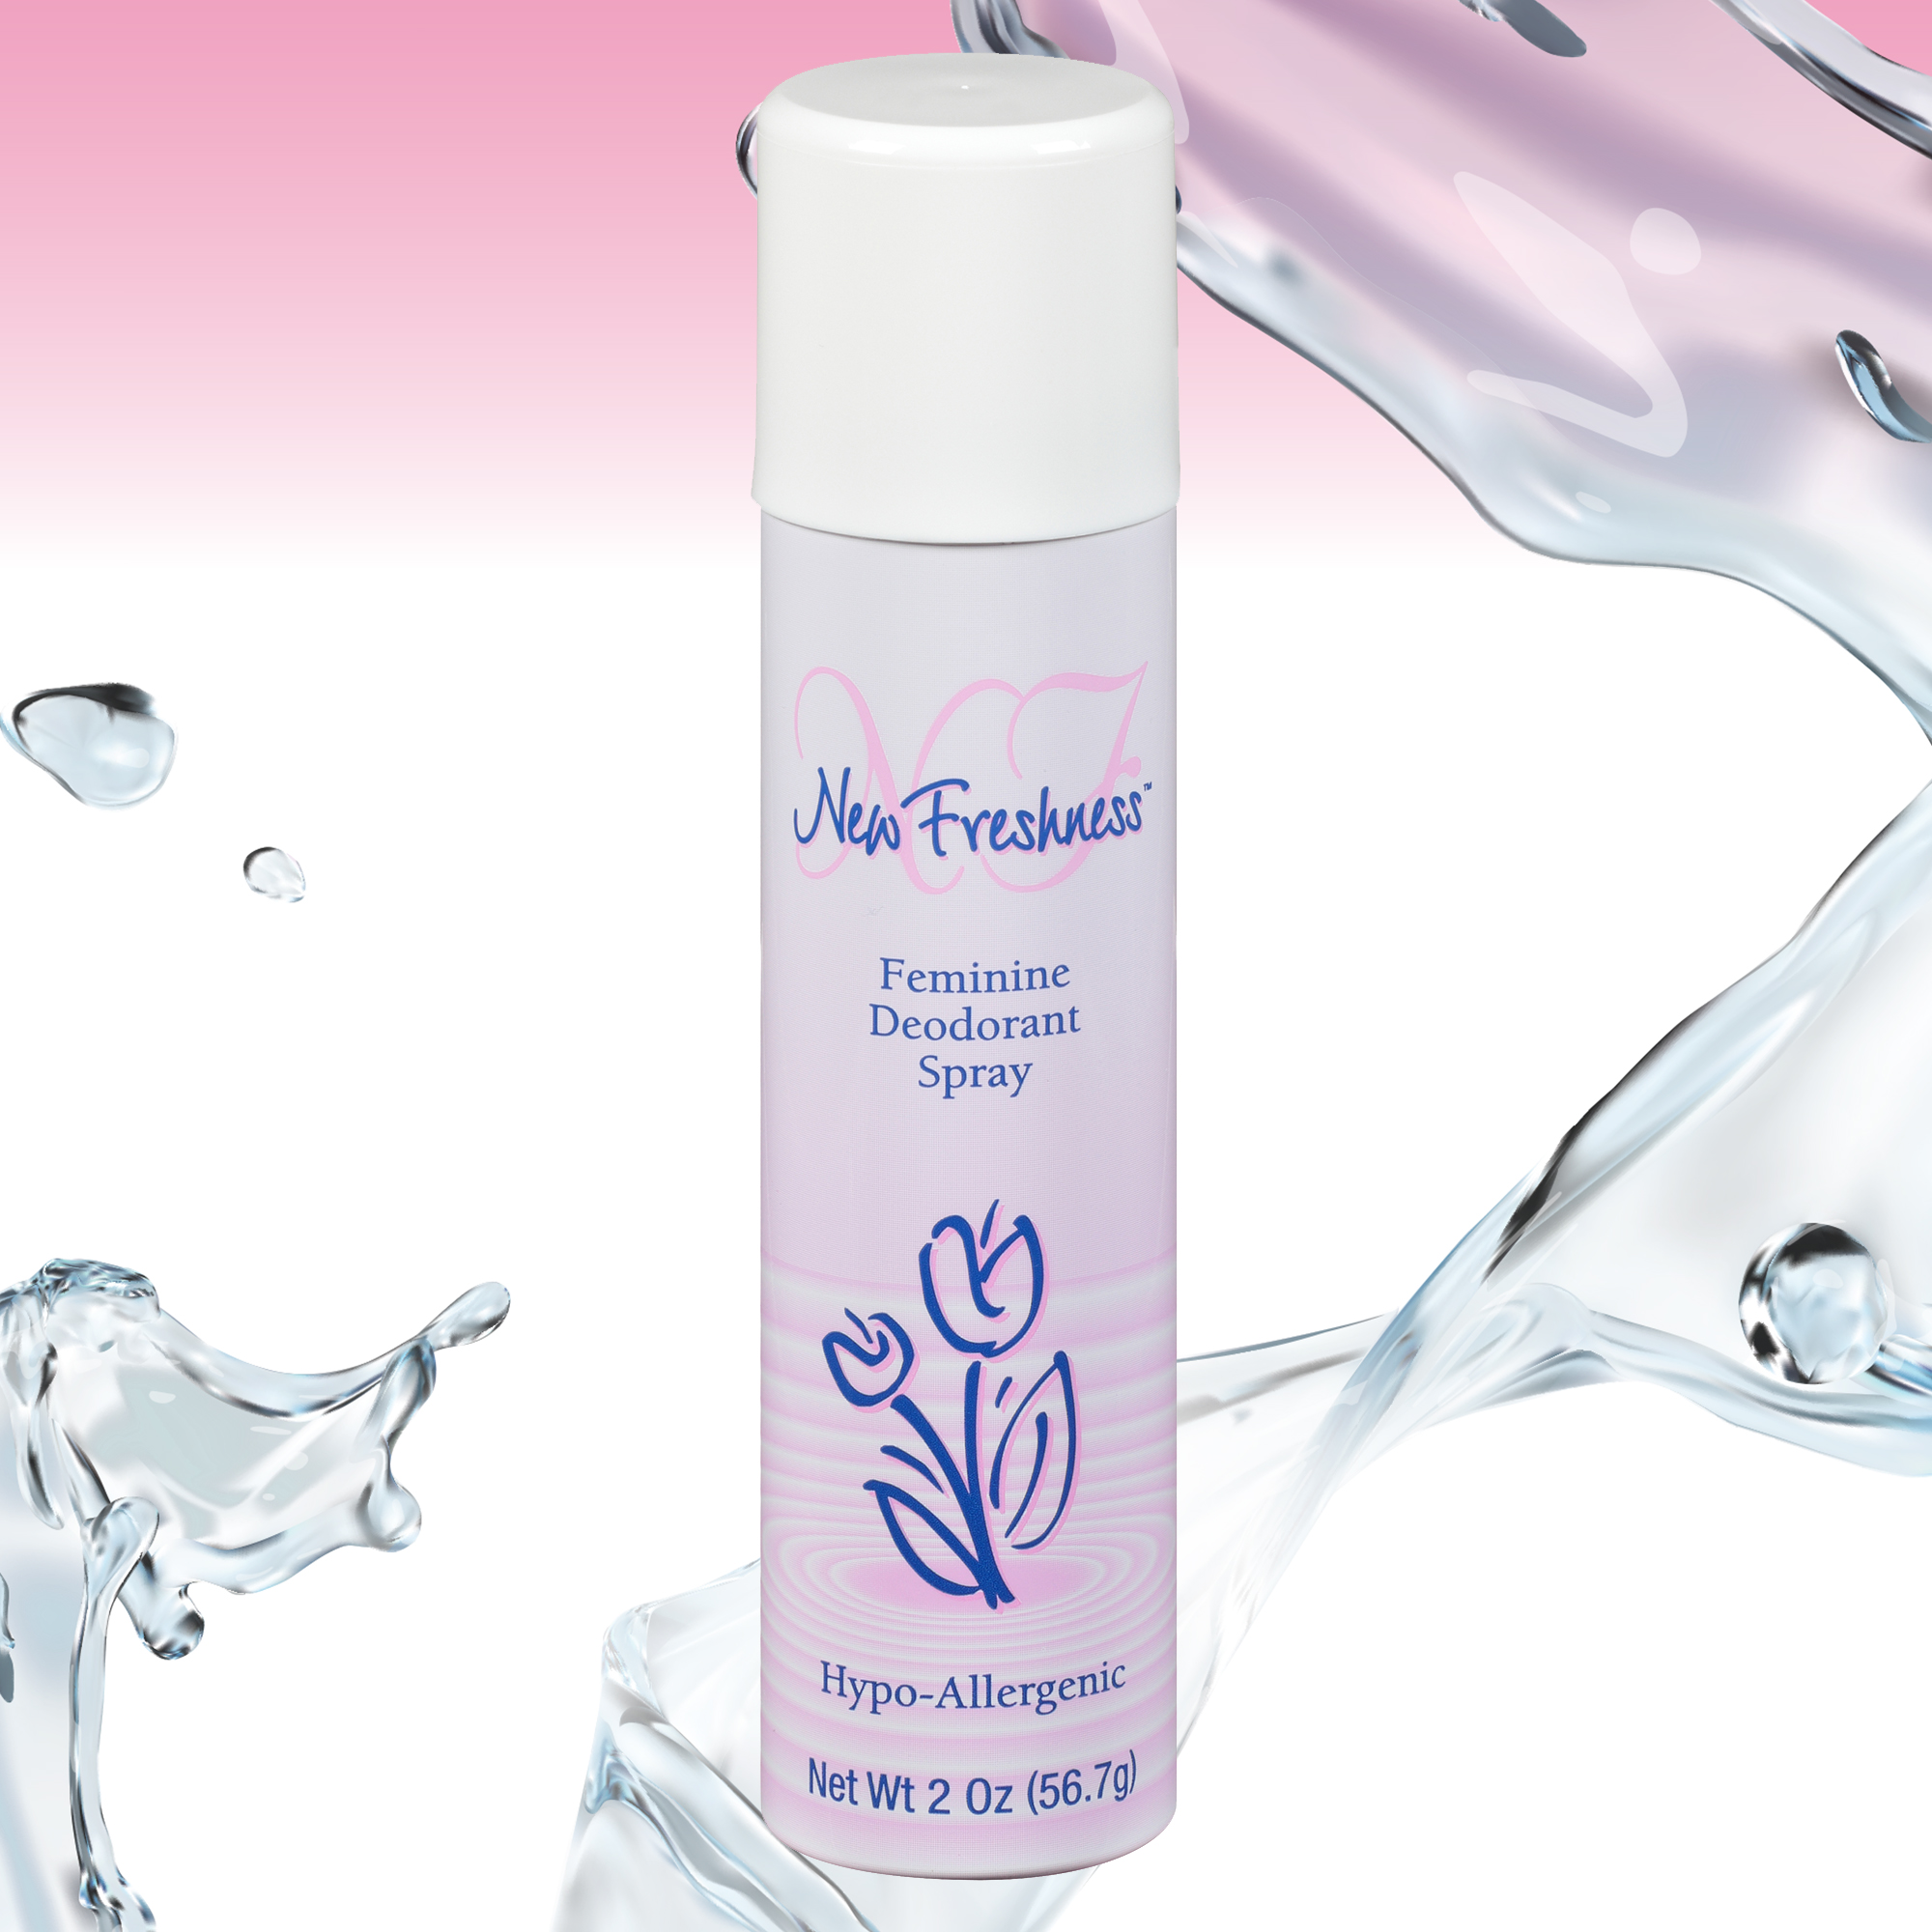 New Freshness Hypoallergenic Feminine Deodorant Spray, 2 Oz - image 3 of 12